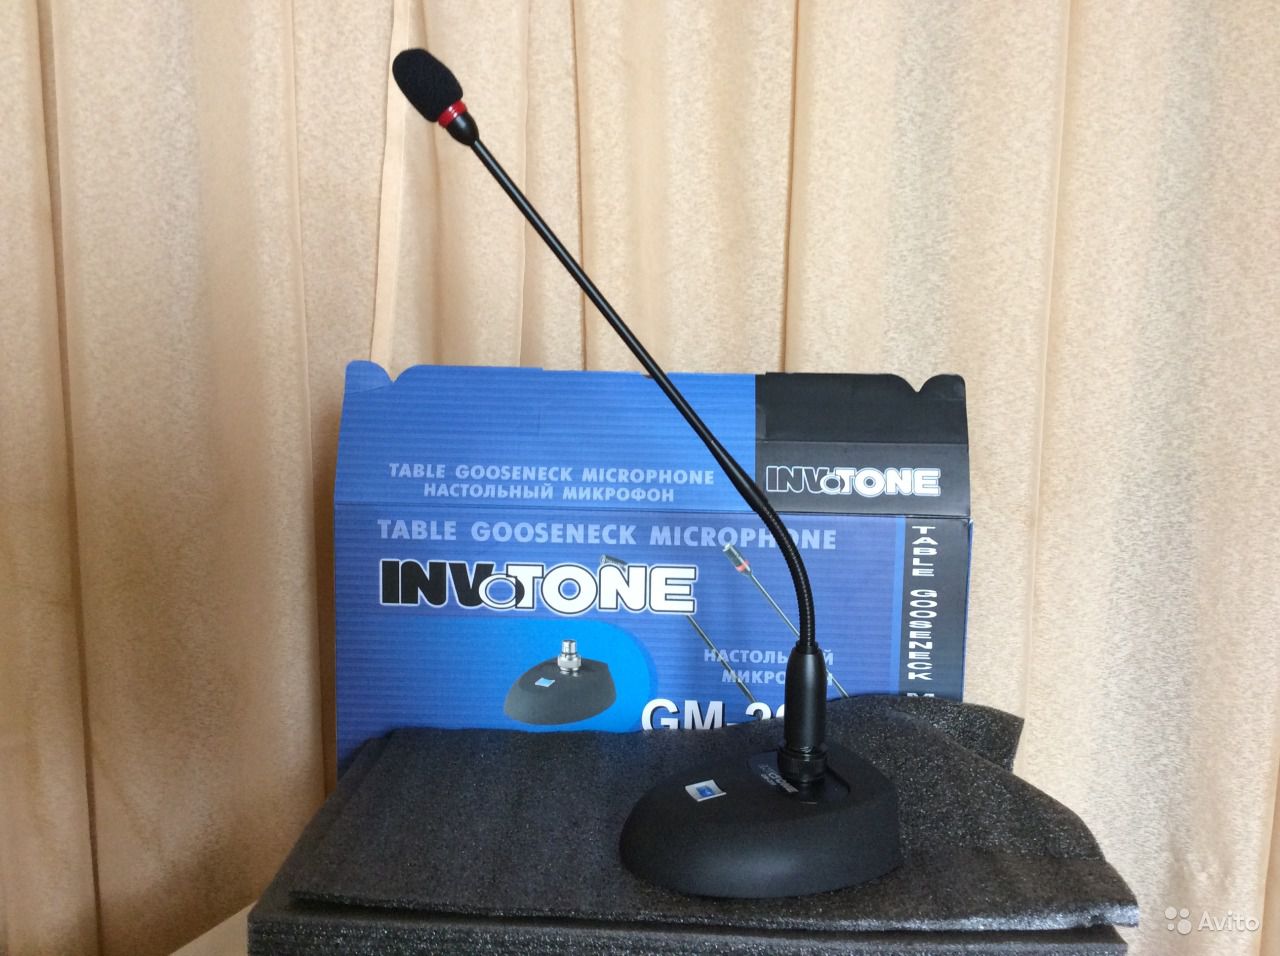  Микрофона для конференций, прокат микрофона для конференций 